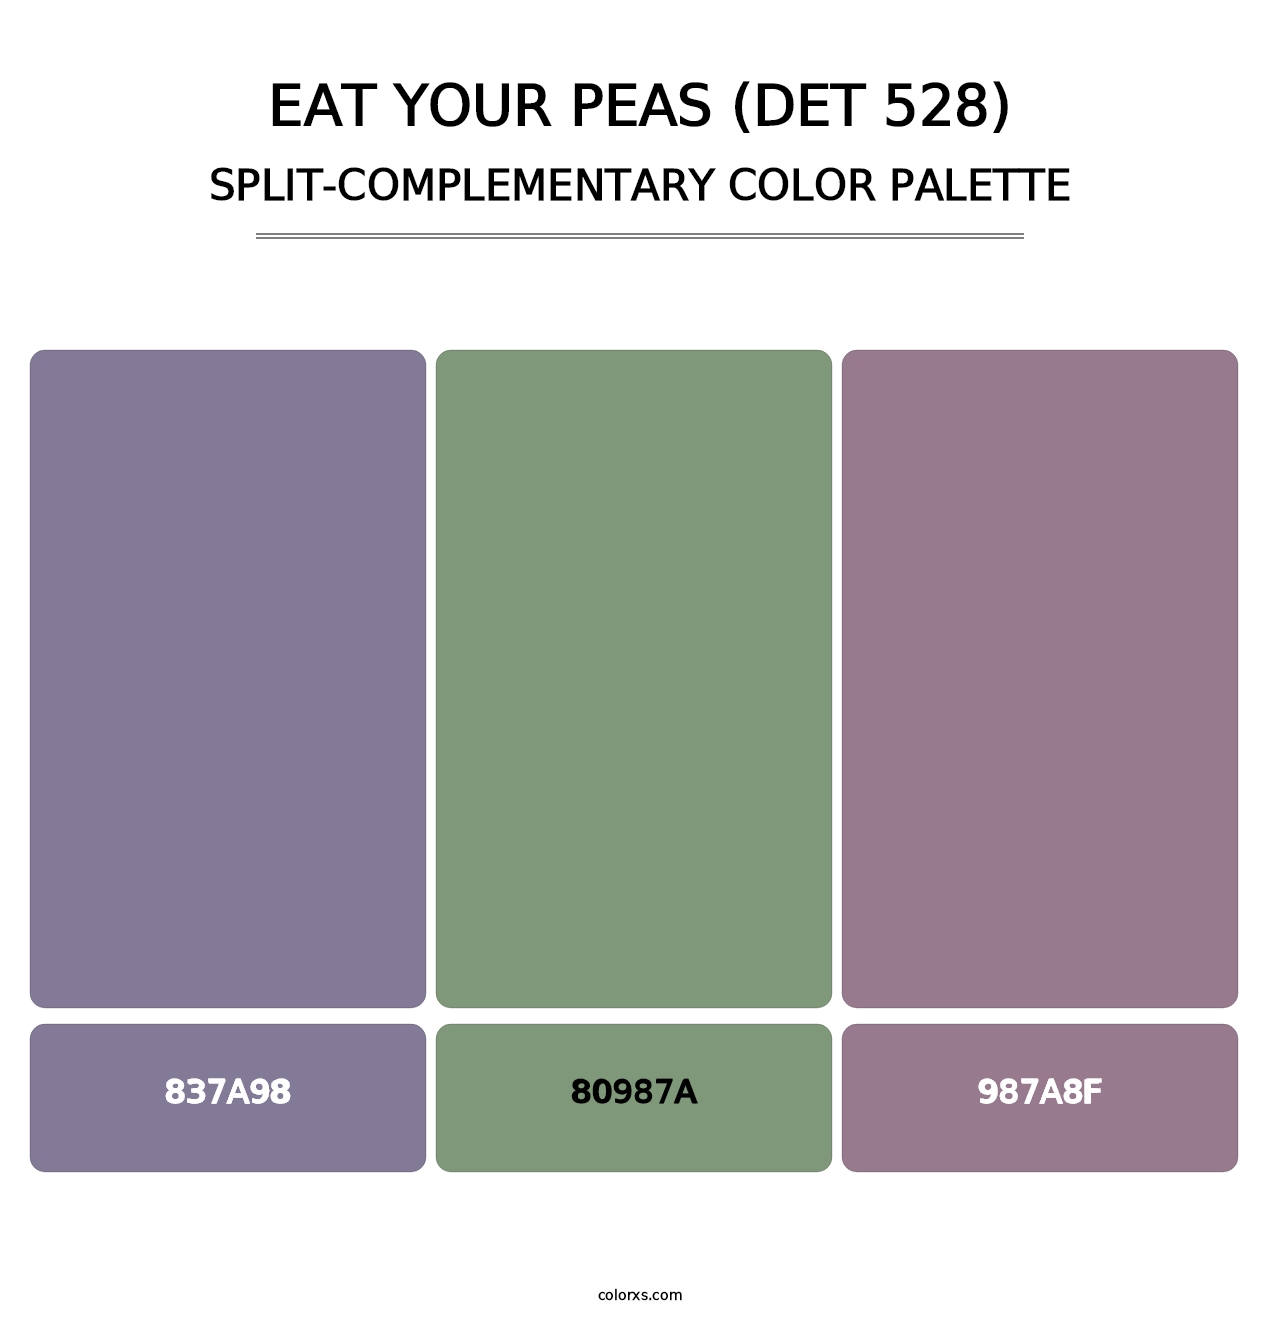 Eat Your Peas (DET 528) - Split-Complementary Color Palette